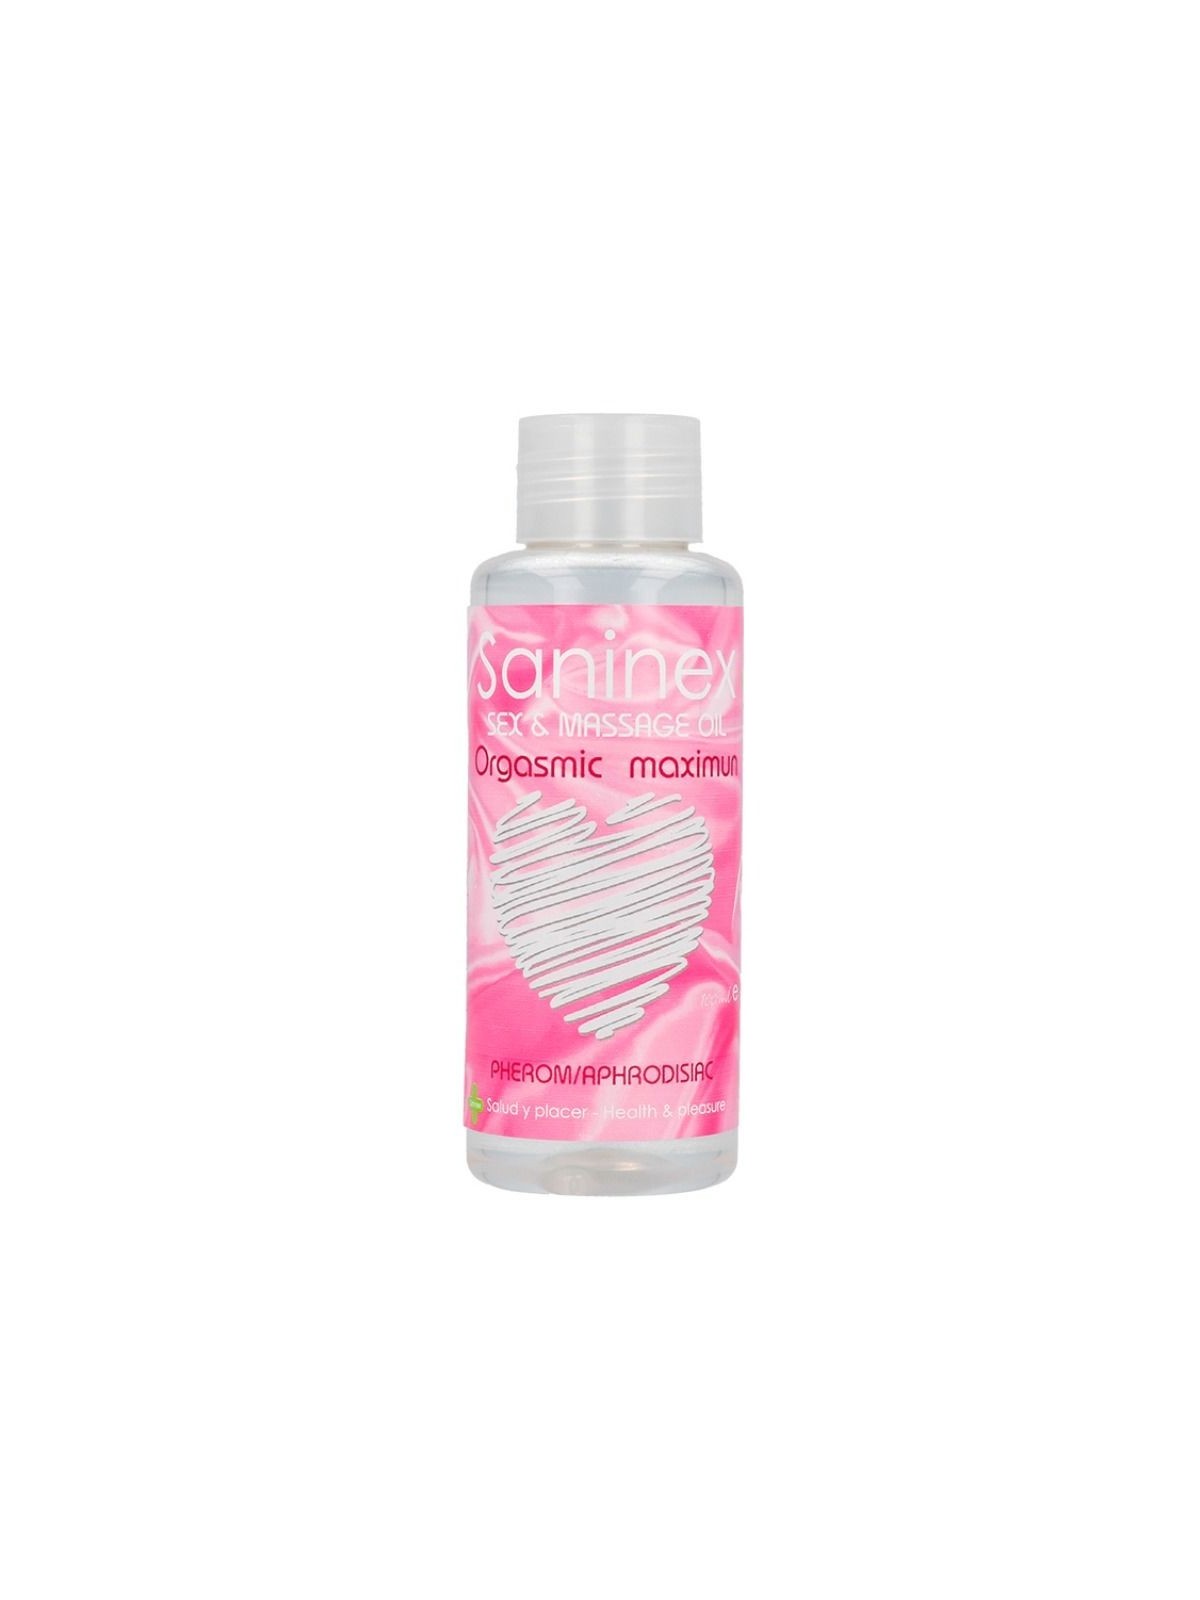 Saninex Orgasmic Aceite De Masaje - Comprar Aceite masaje erótico Saninex - Aceites corporales eróticos (1)